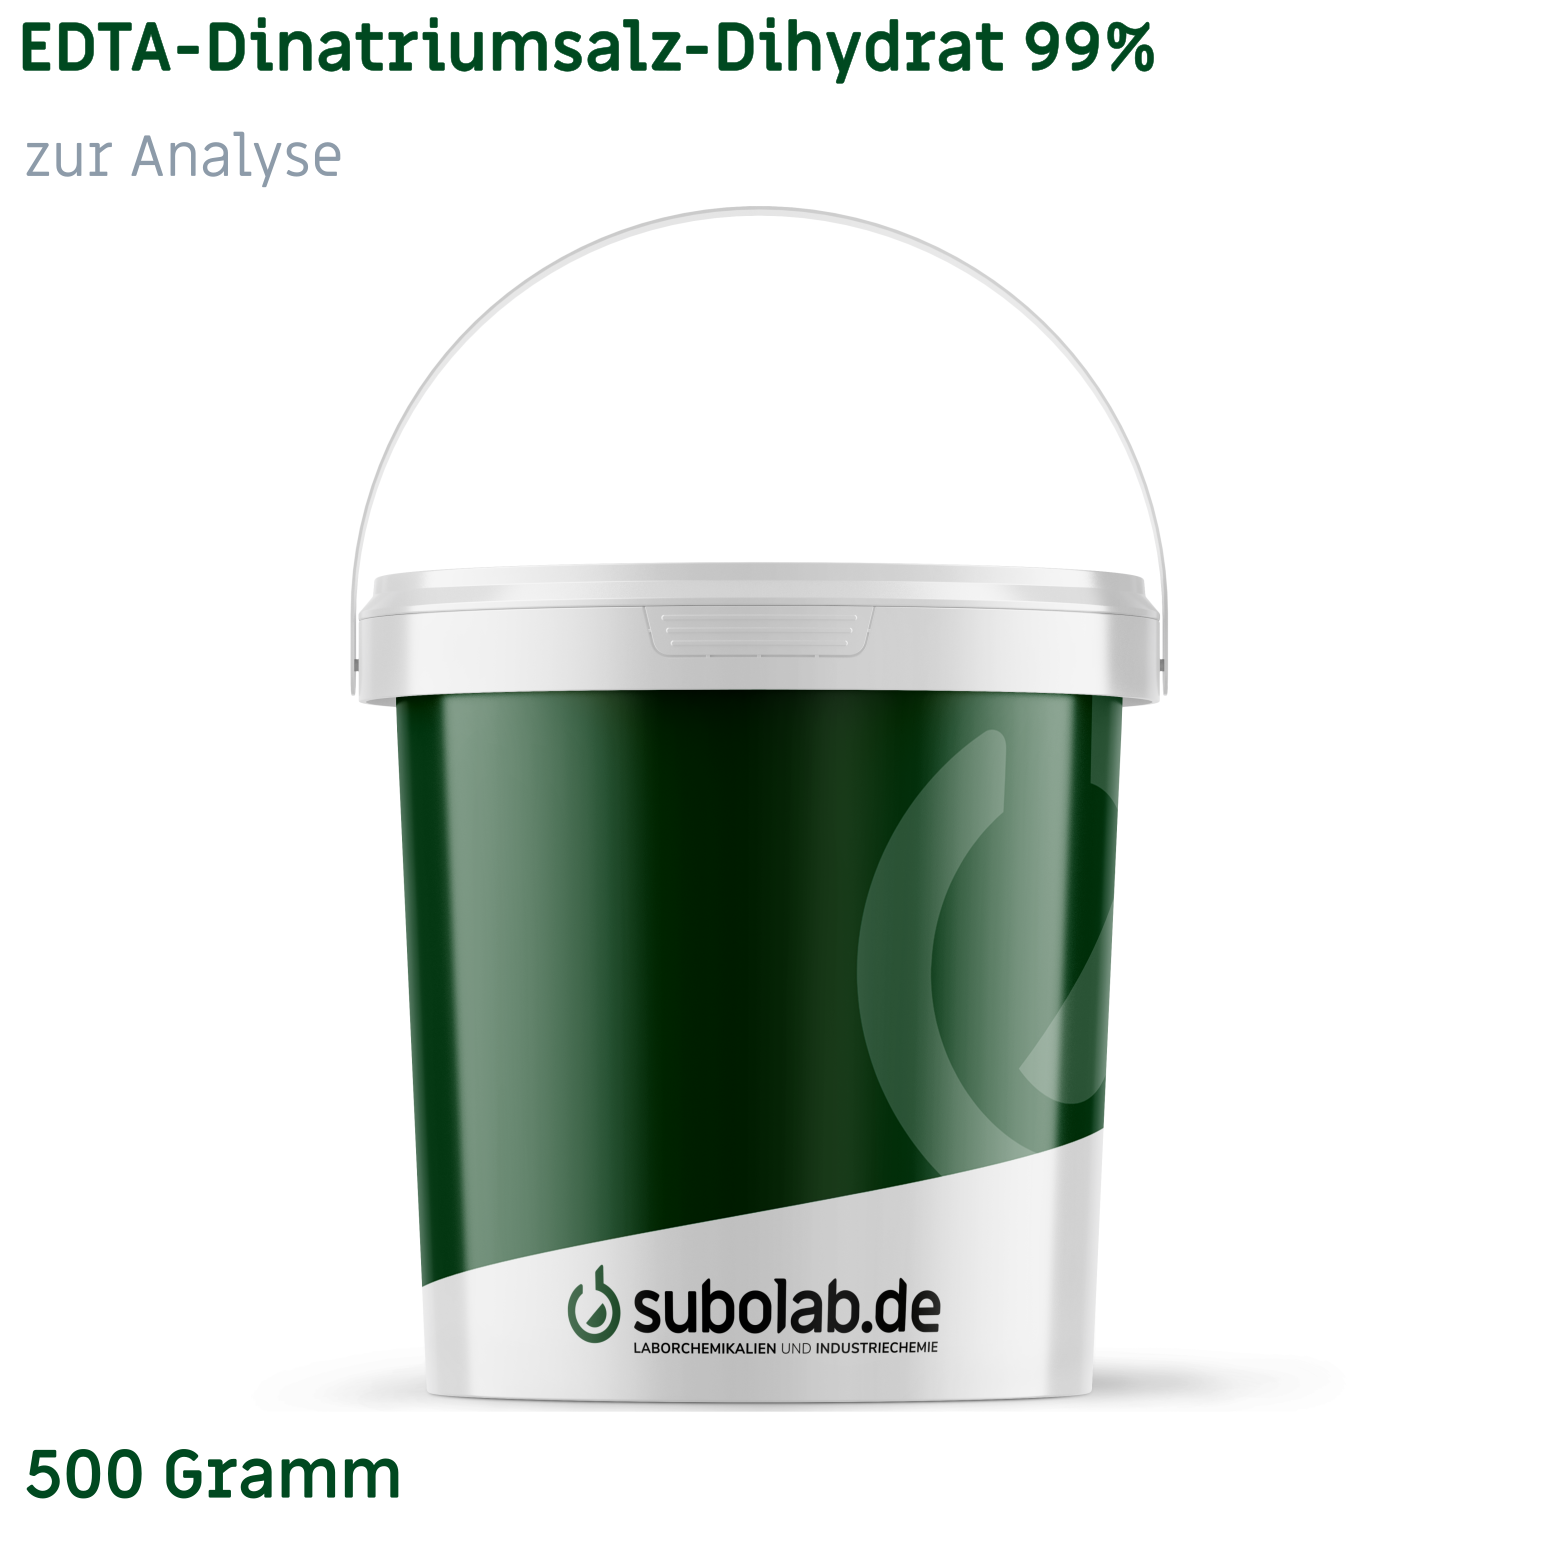 Bild von EDTA - Dinatriumsalz - Dihydrat 99% zur Analyse (500 Gramm)